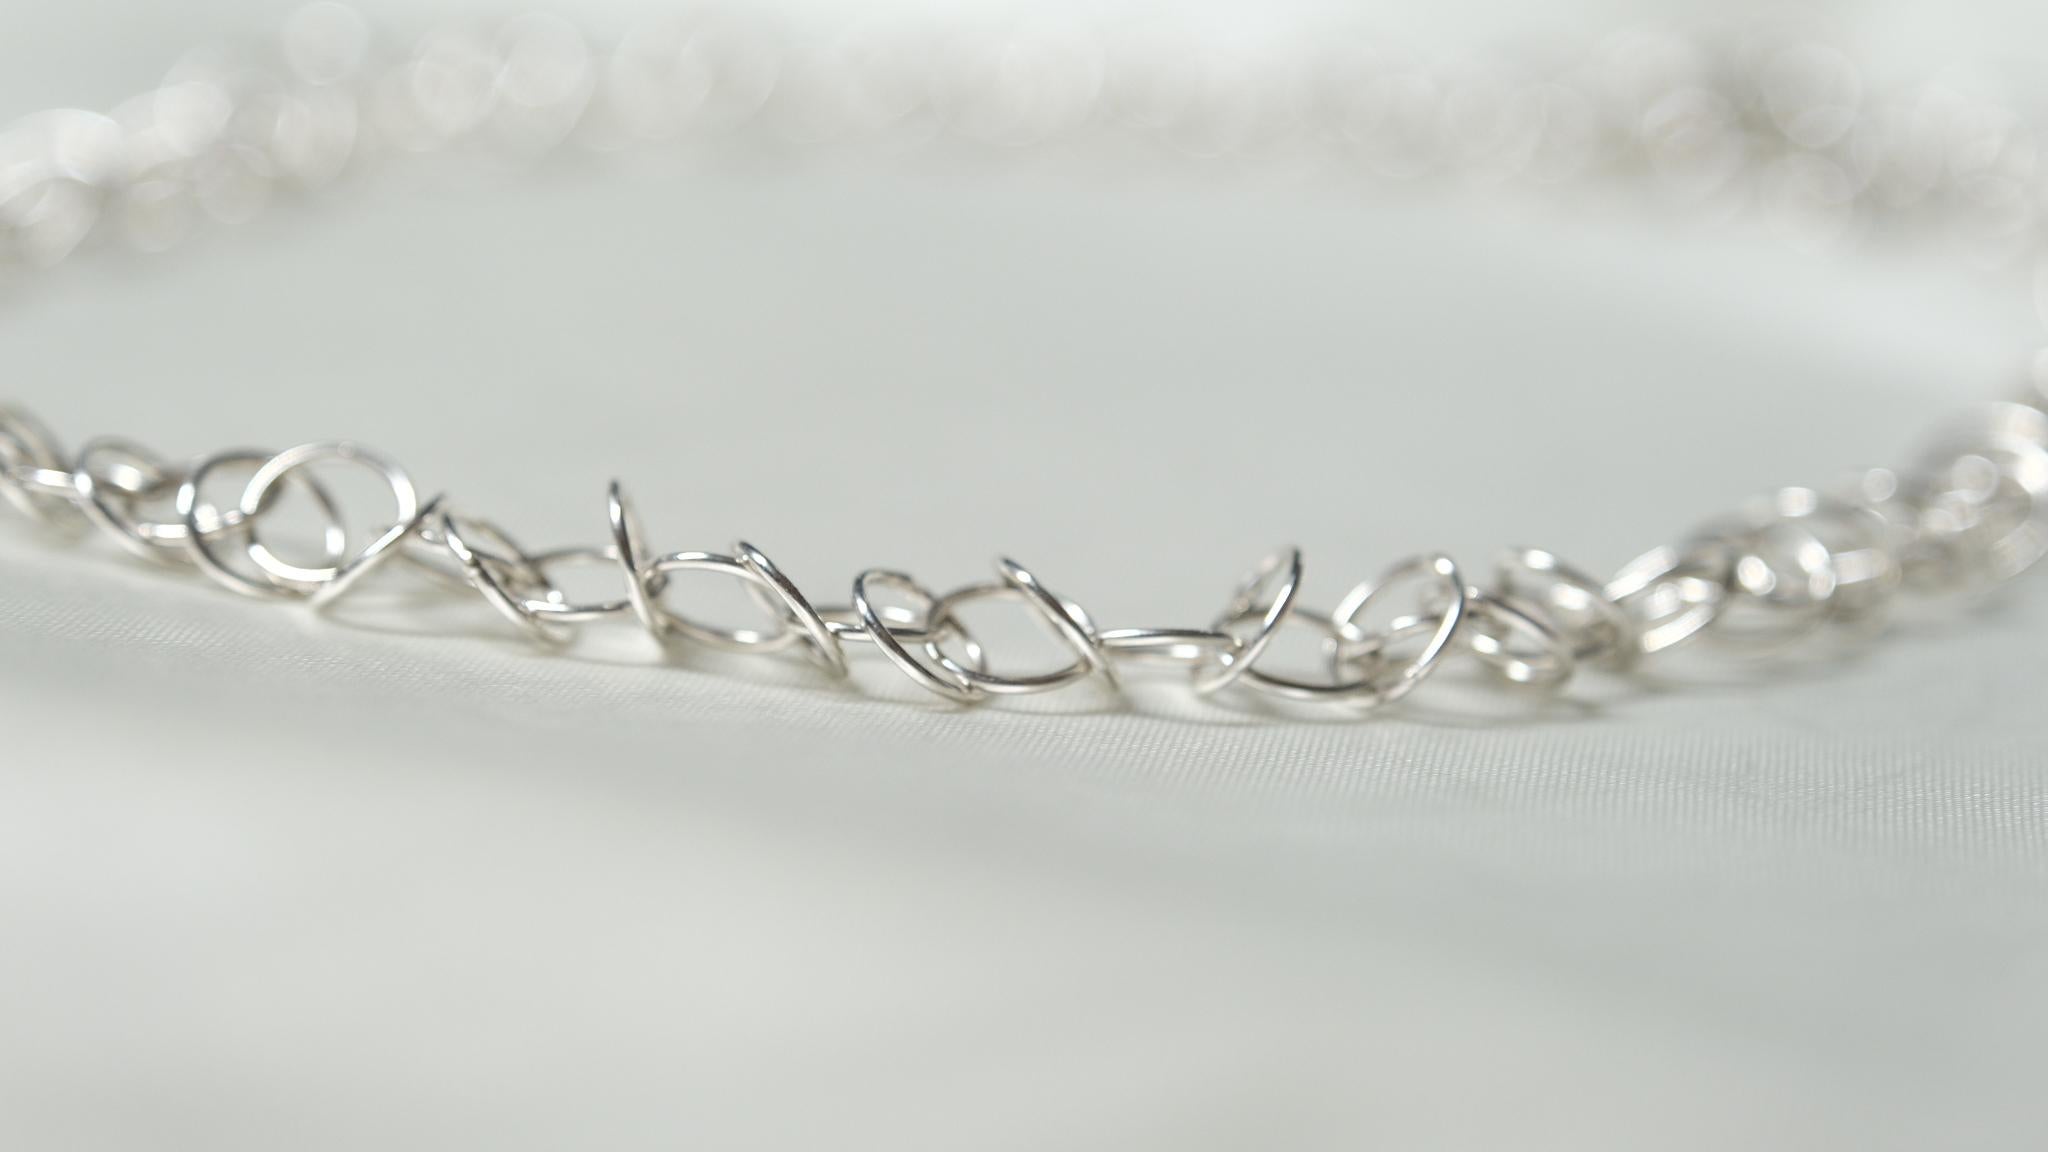 Détails du produit :

Le collier Looping est fabriqué à la main à la perfection avec des boucles circulaires métalliques précieuses assemblées pour créer une magnifique pièce d'apparat. Officiellement poinçonné par l'Assay Office, Royaume-Uni. Cet